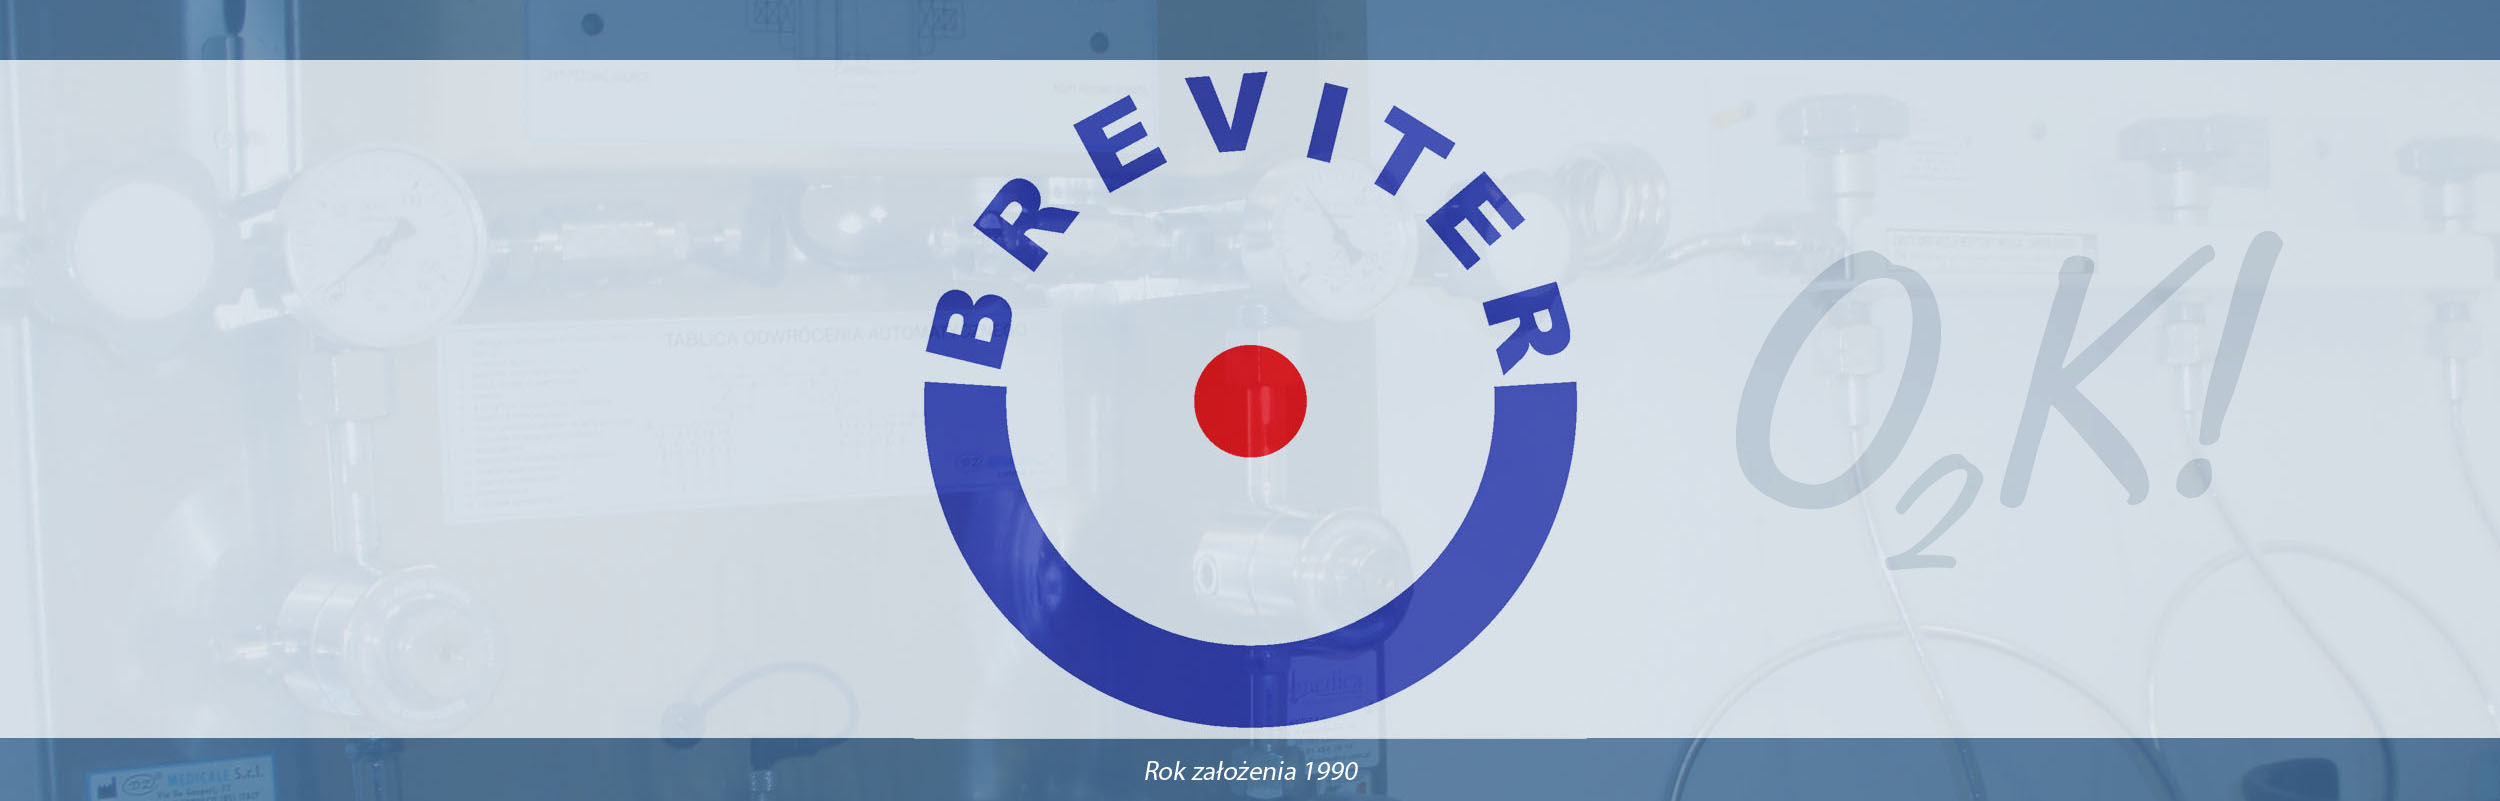 Breviter – instalacje gazów medycznych, koncentratory tlenu